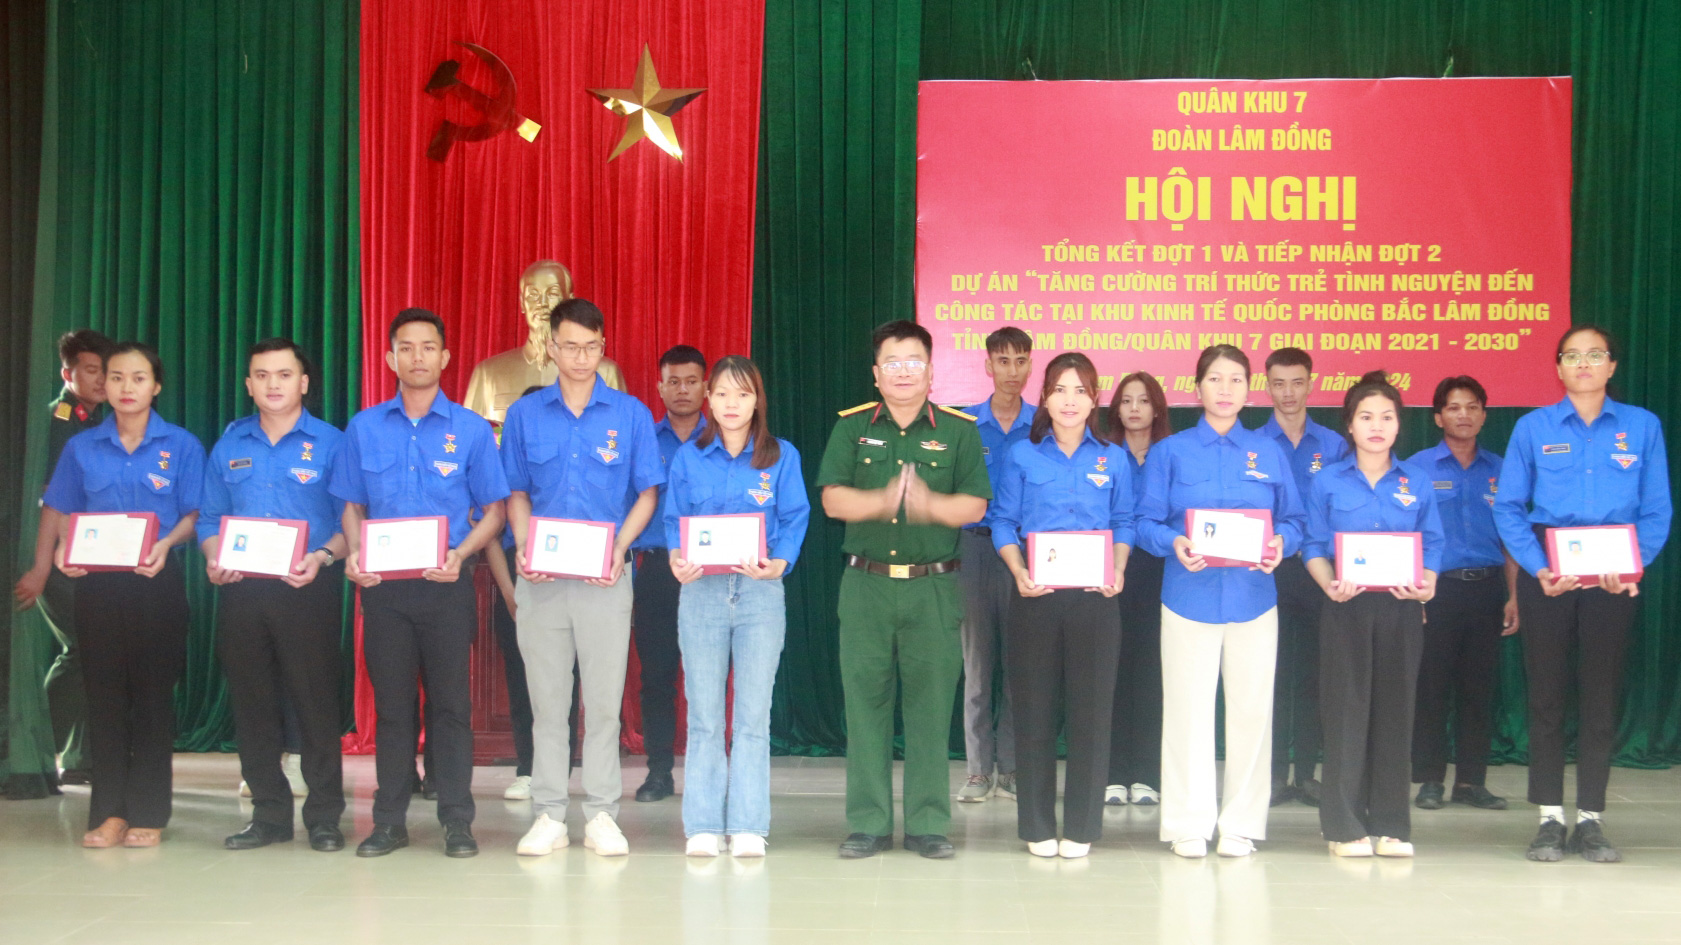 Tổng kết 2 năm thực hiện Dự án Tăng cường trí thức trẻ tình nguyện đến công tác tại Khu Kinh tế - Quốc phòng Bắc Lâm Đồng